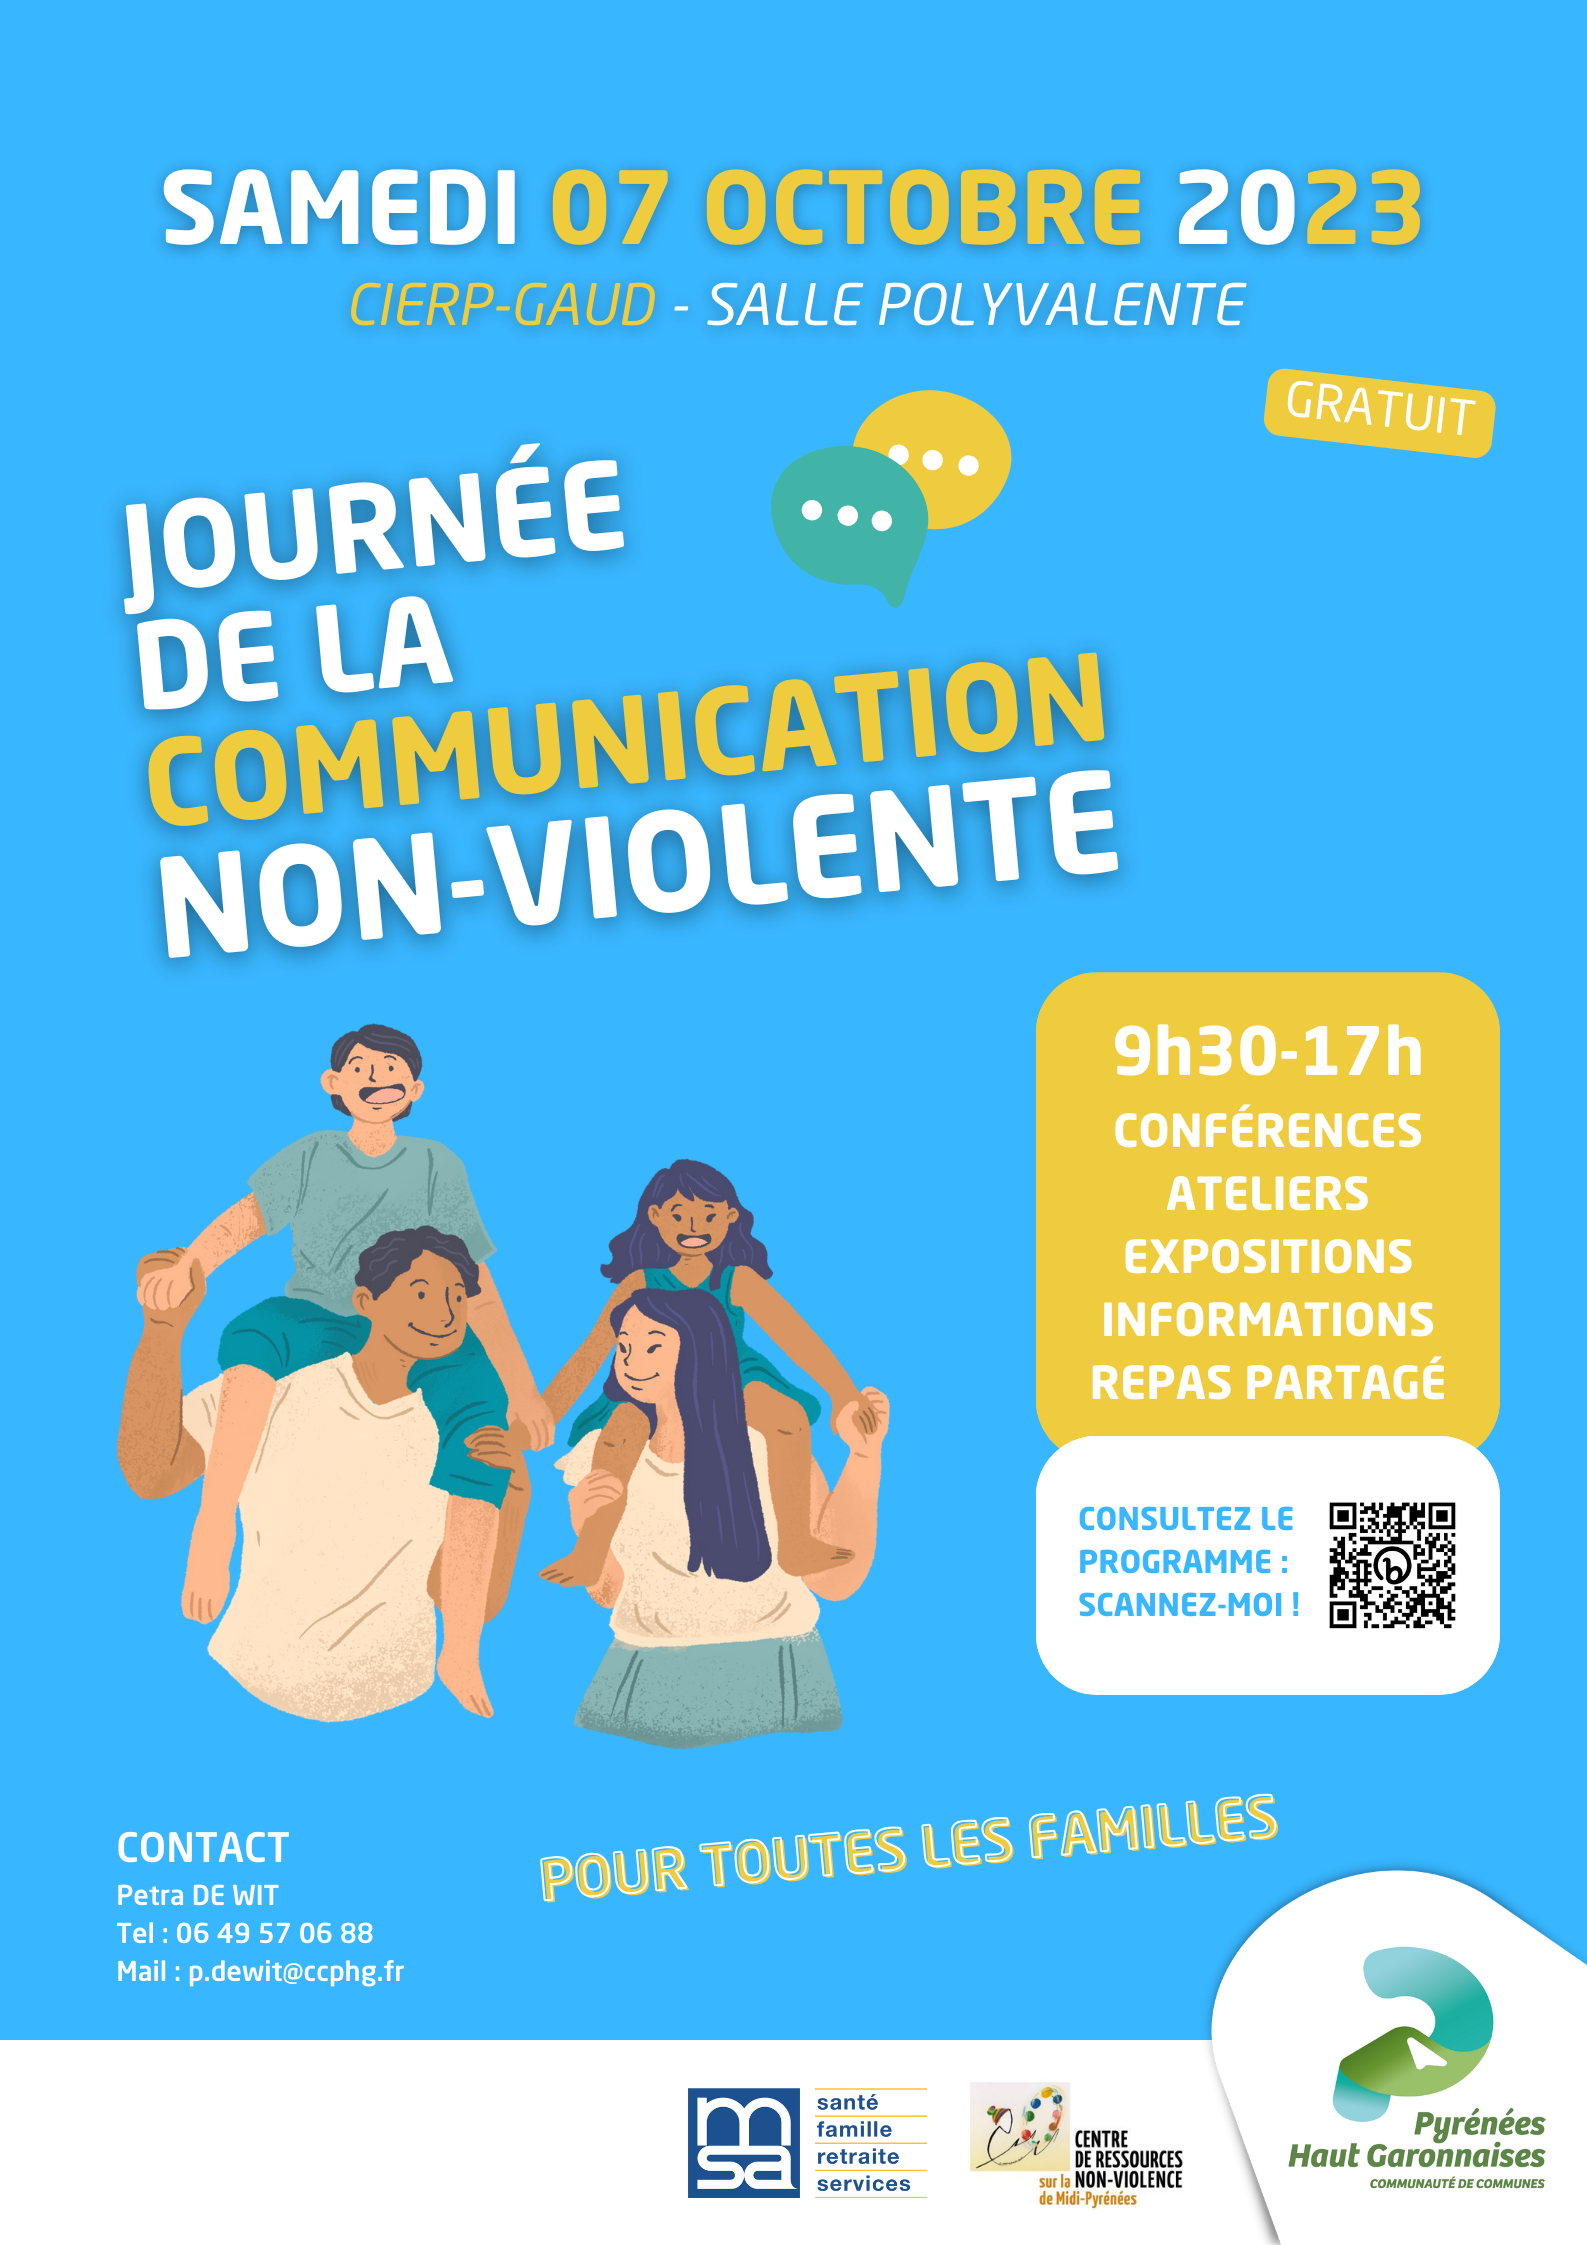 JOURNÉE DE LA COMMUNICATION NON-VIOLENTE SAMEDI 7 OCTOBRE